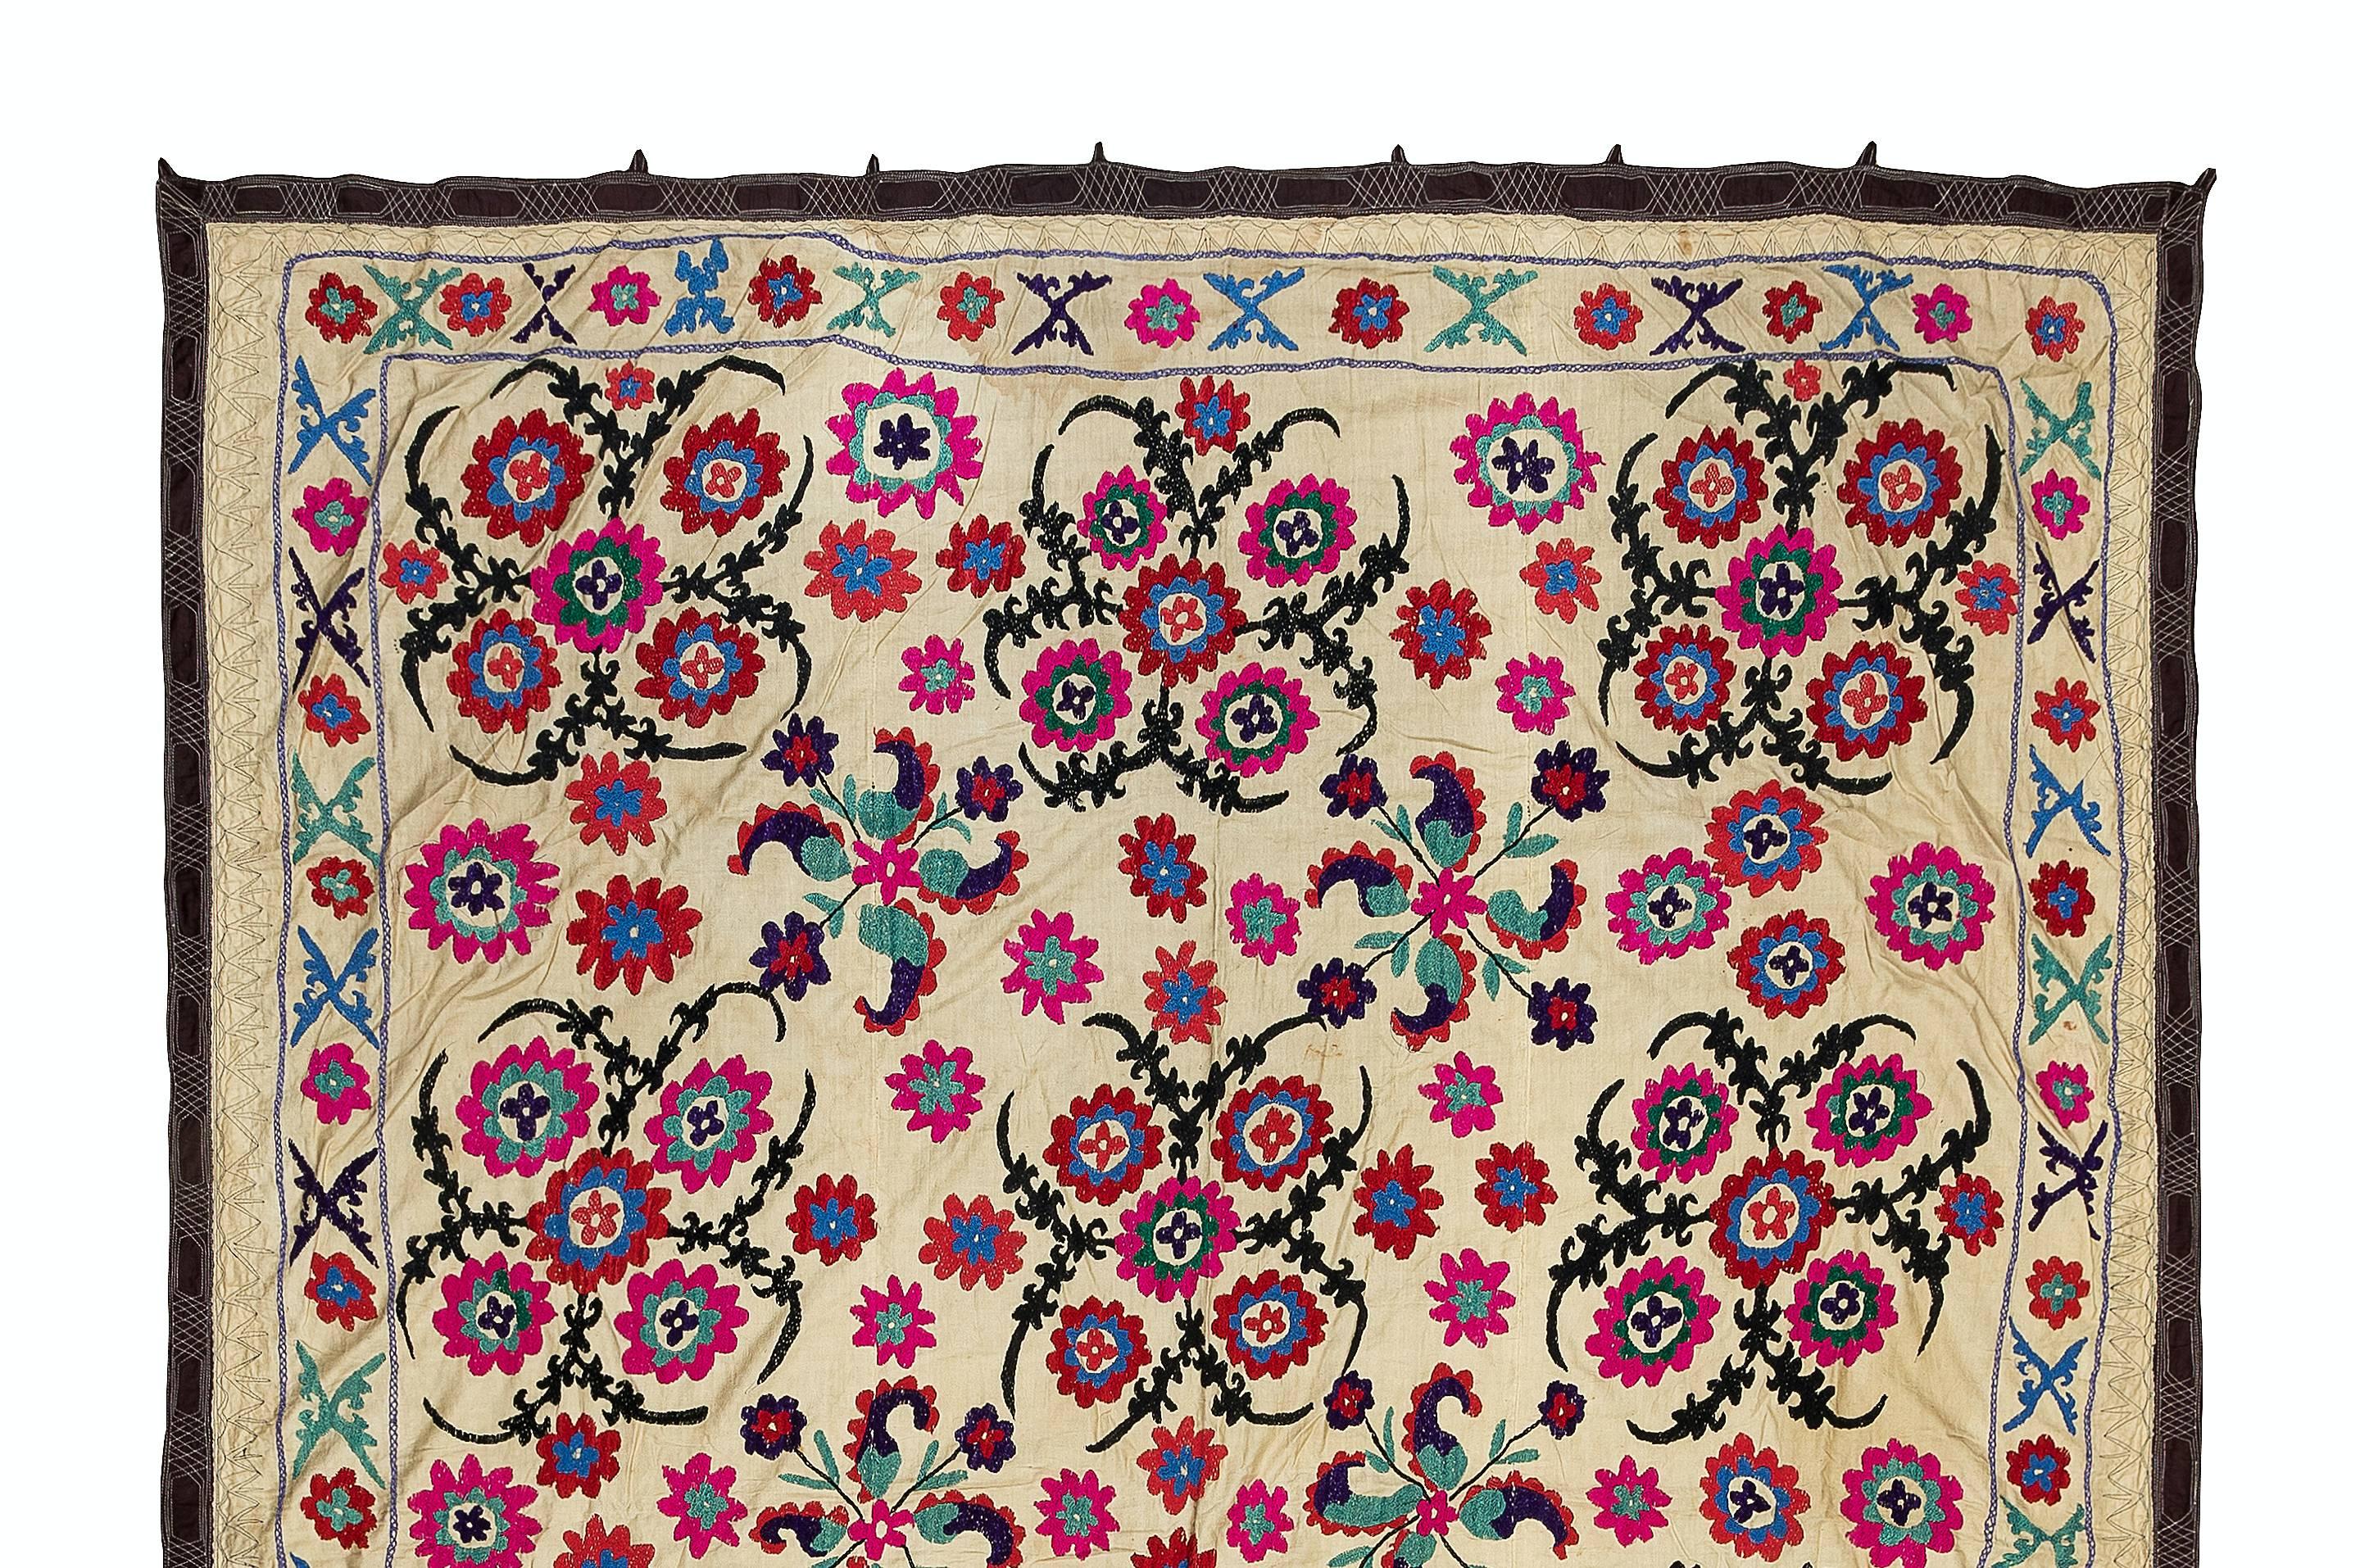 Suzani, terme d'Asie centrale désignant un type spécifique de travaux d'aiguille, est également le nom plus général des pièces textiles décoratives extrêmement populaires qui présentent ces travaux d'aiguille dans des couleurs vives avec des motifs